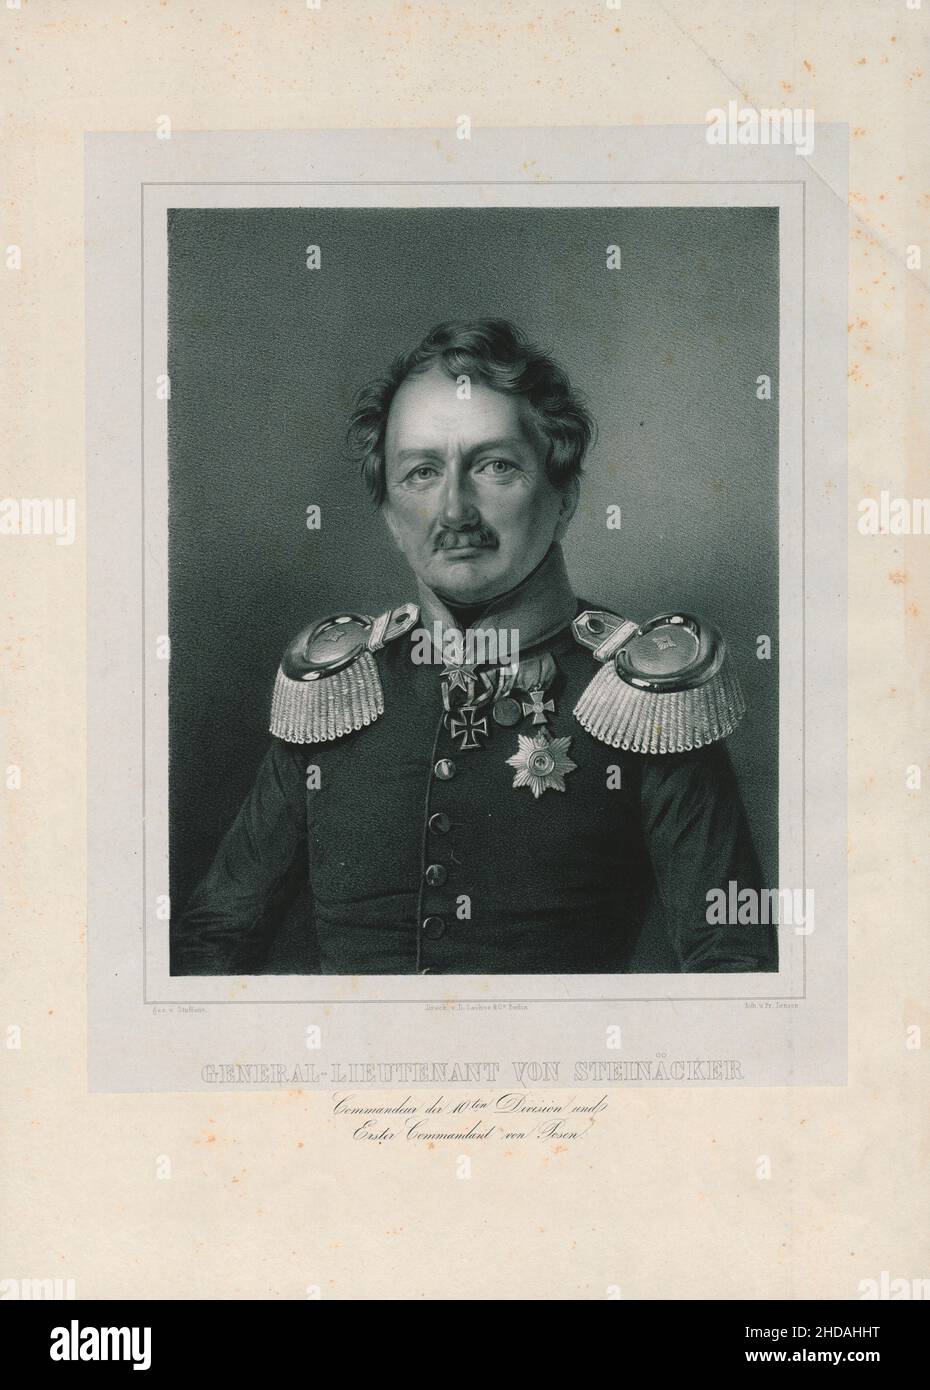 Retrato del General Teniente von Steinäcker: Comandante de la División 10th y primer Comandante de Posen. 1843 Foto de stock